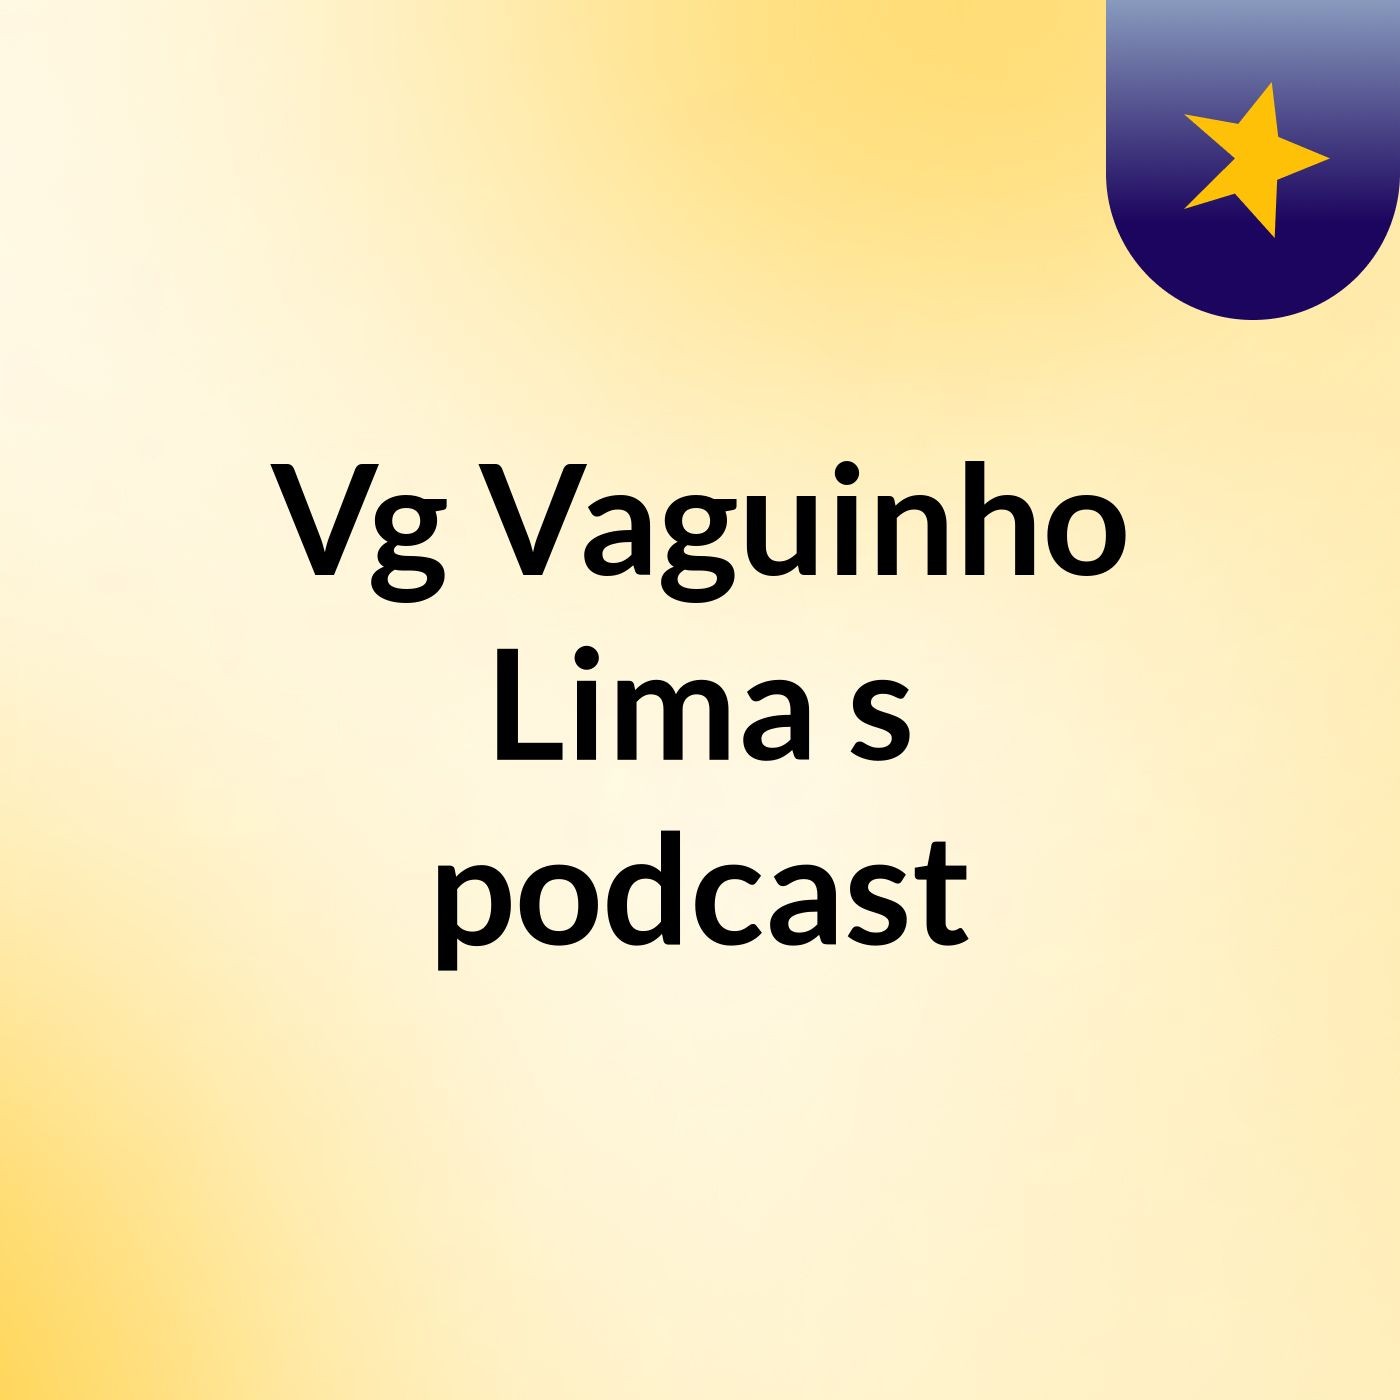 Vg Vaguinho Lima's podcast